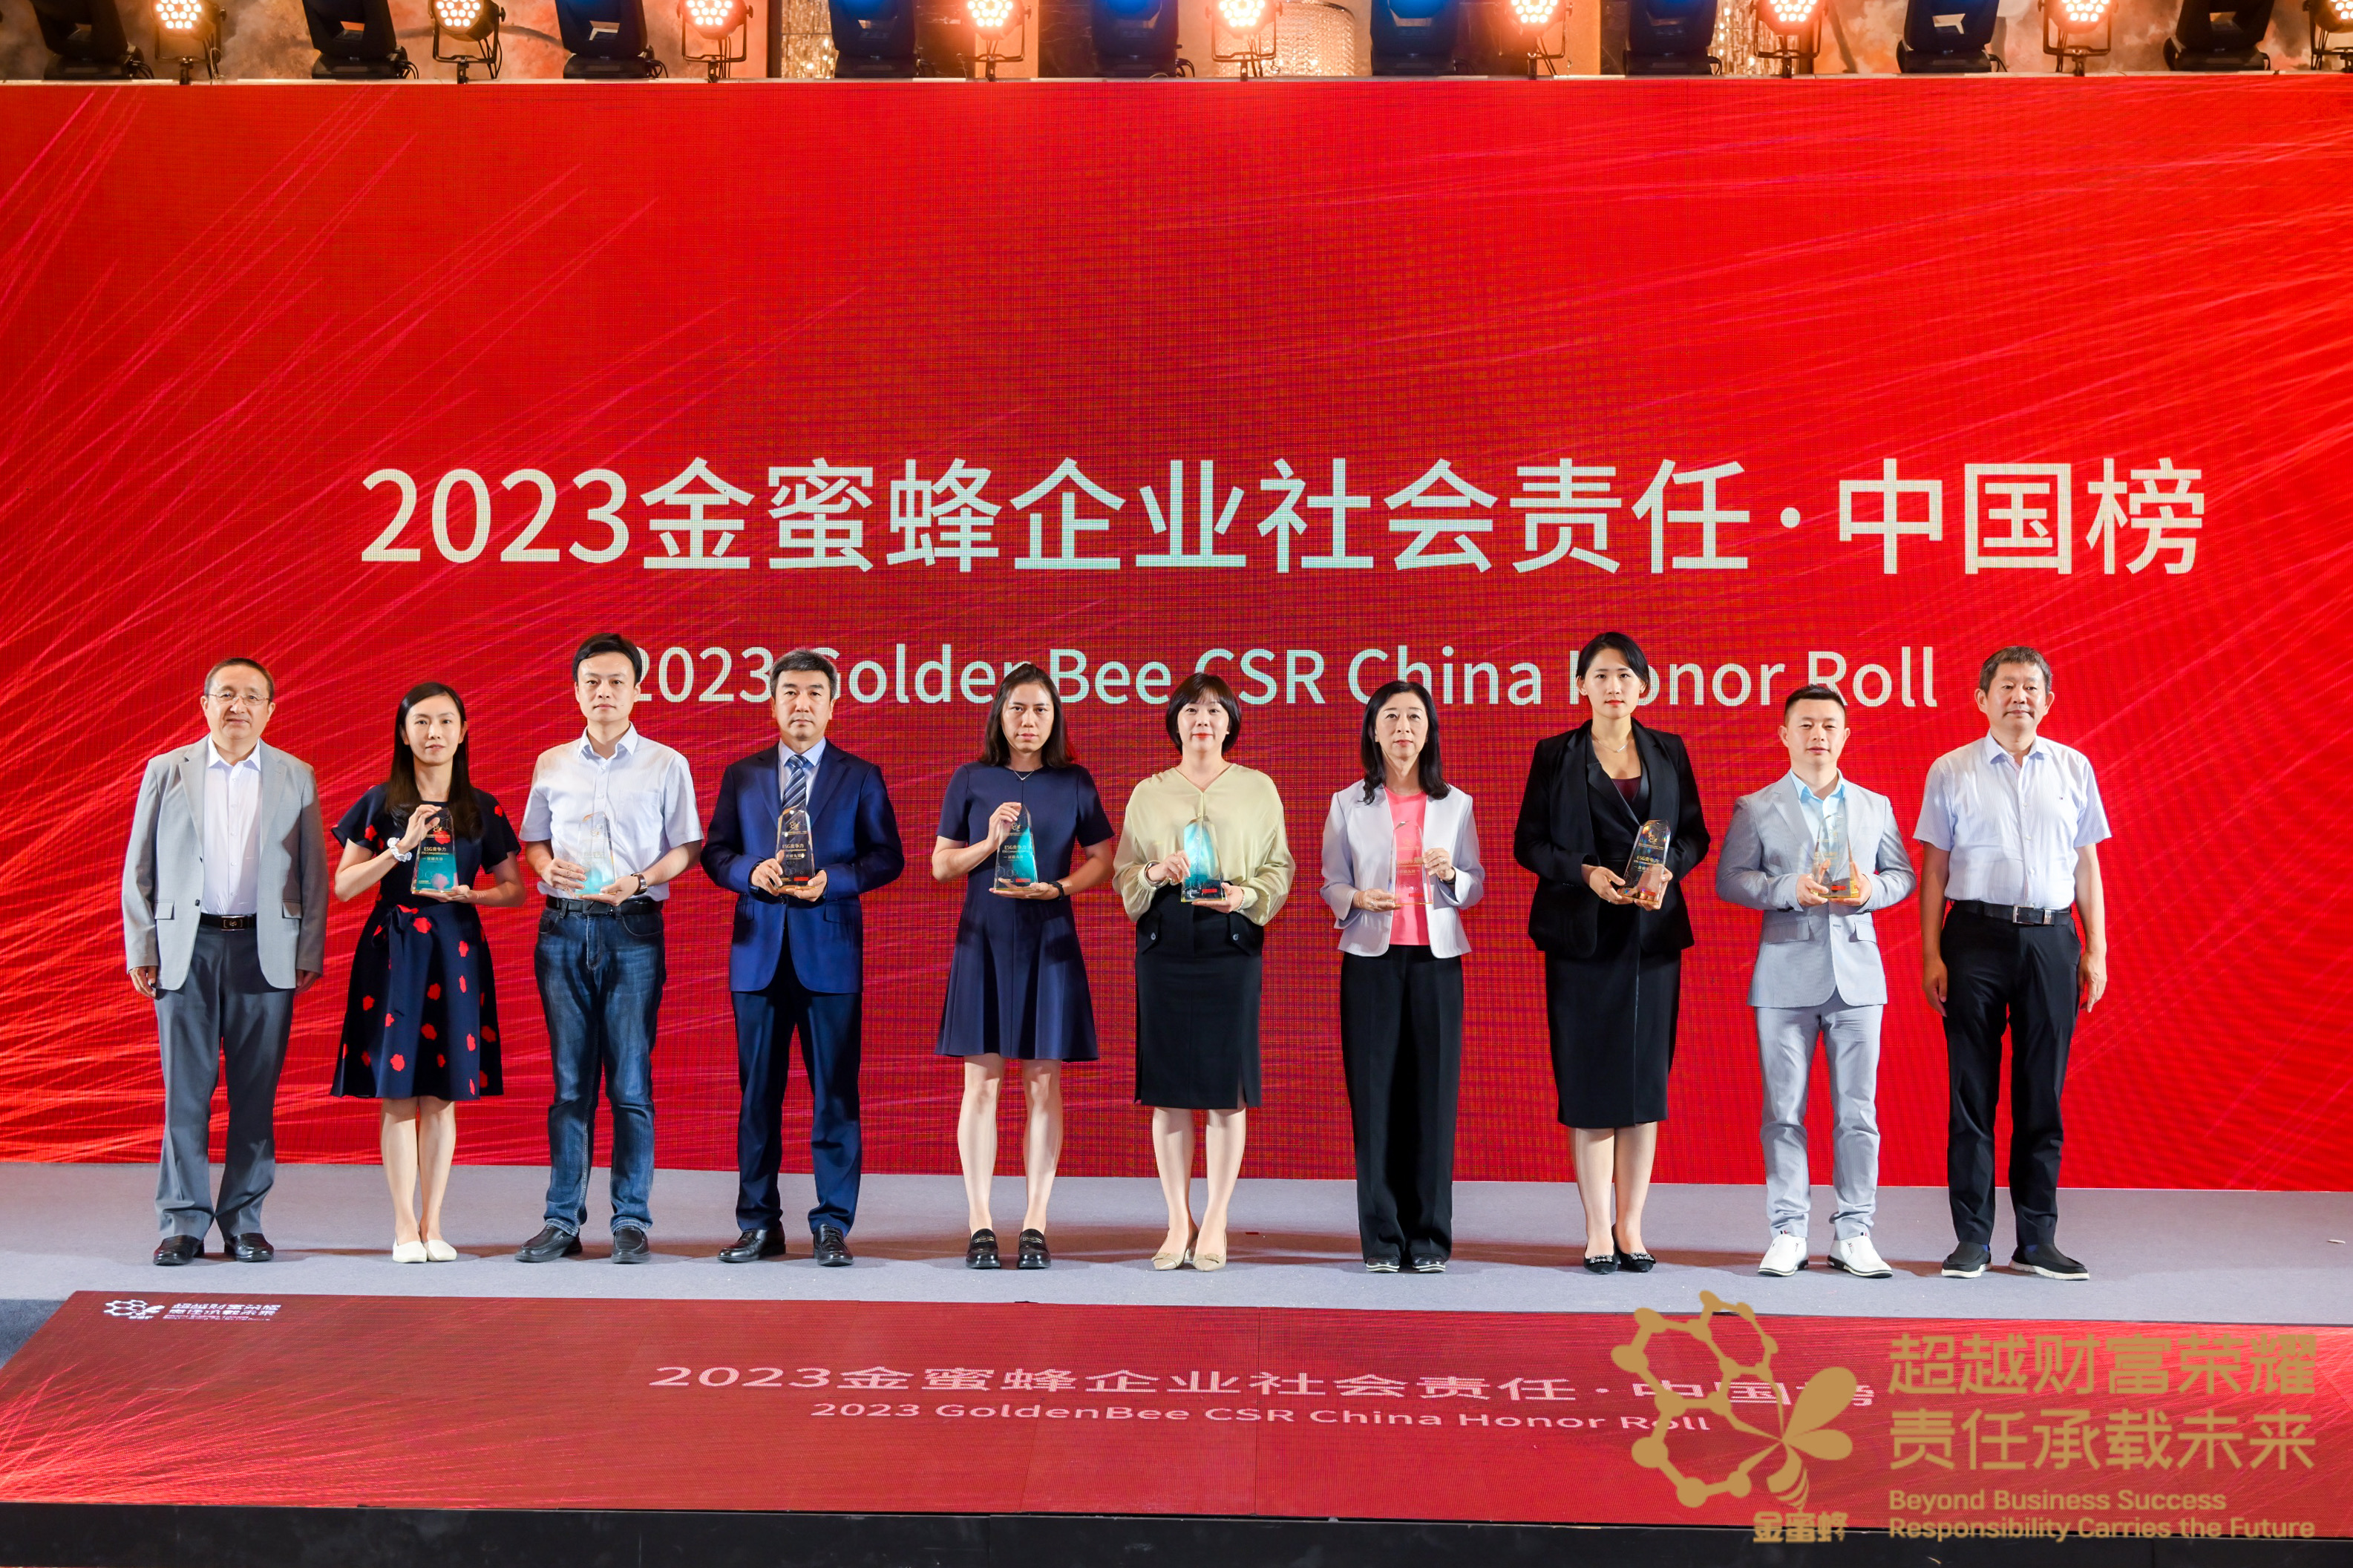 我司上榜“2023金蜜蜂企业社会责任·中国榜” 并荣获“ESG竞争力·双碳先锋”称号